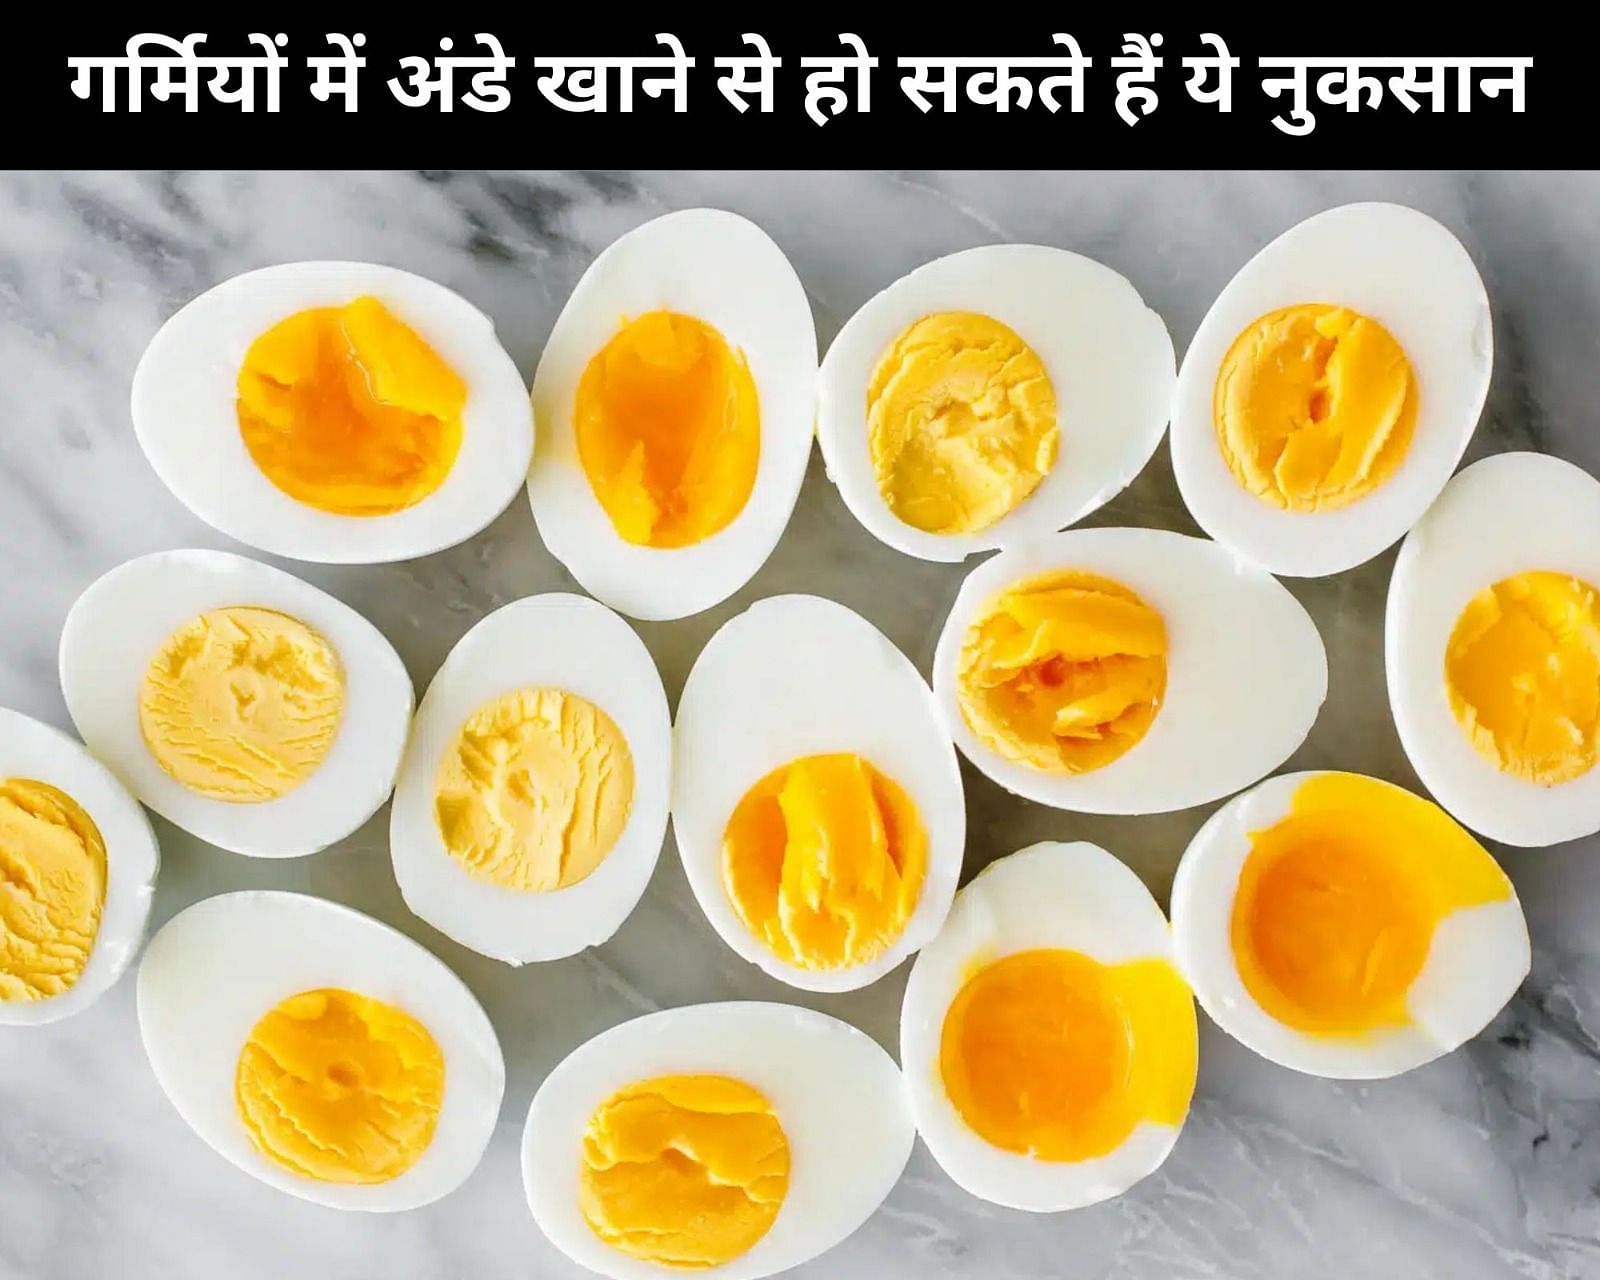 गर्मियों में अंडे खाने से हो सकते हैं ये 5 नुकसान (फोटो - sportskeedaहिन्दी)